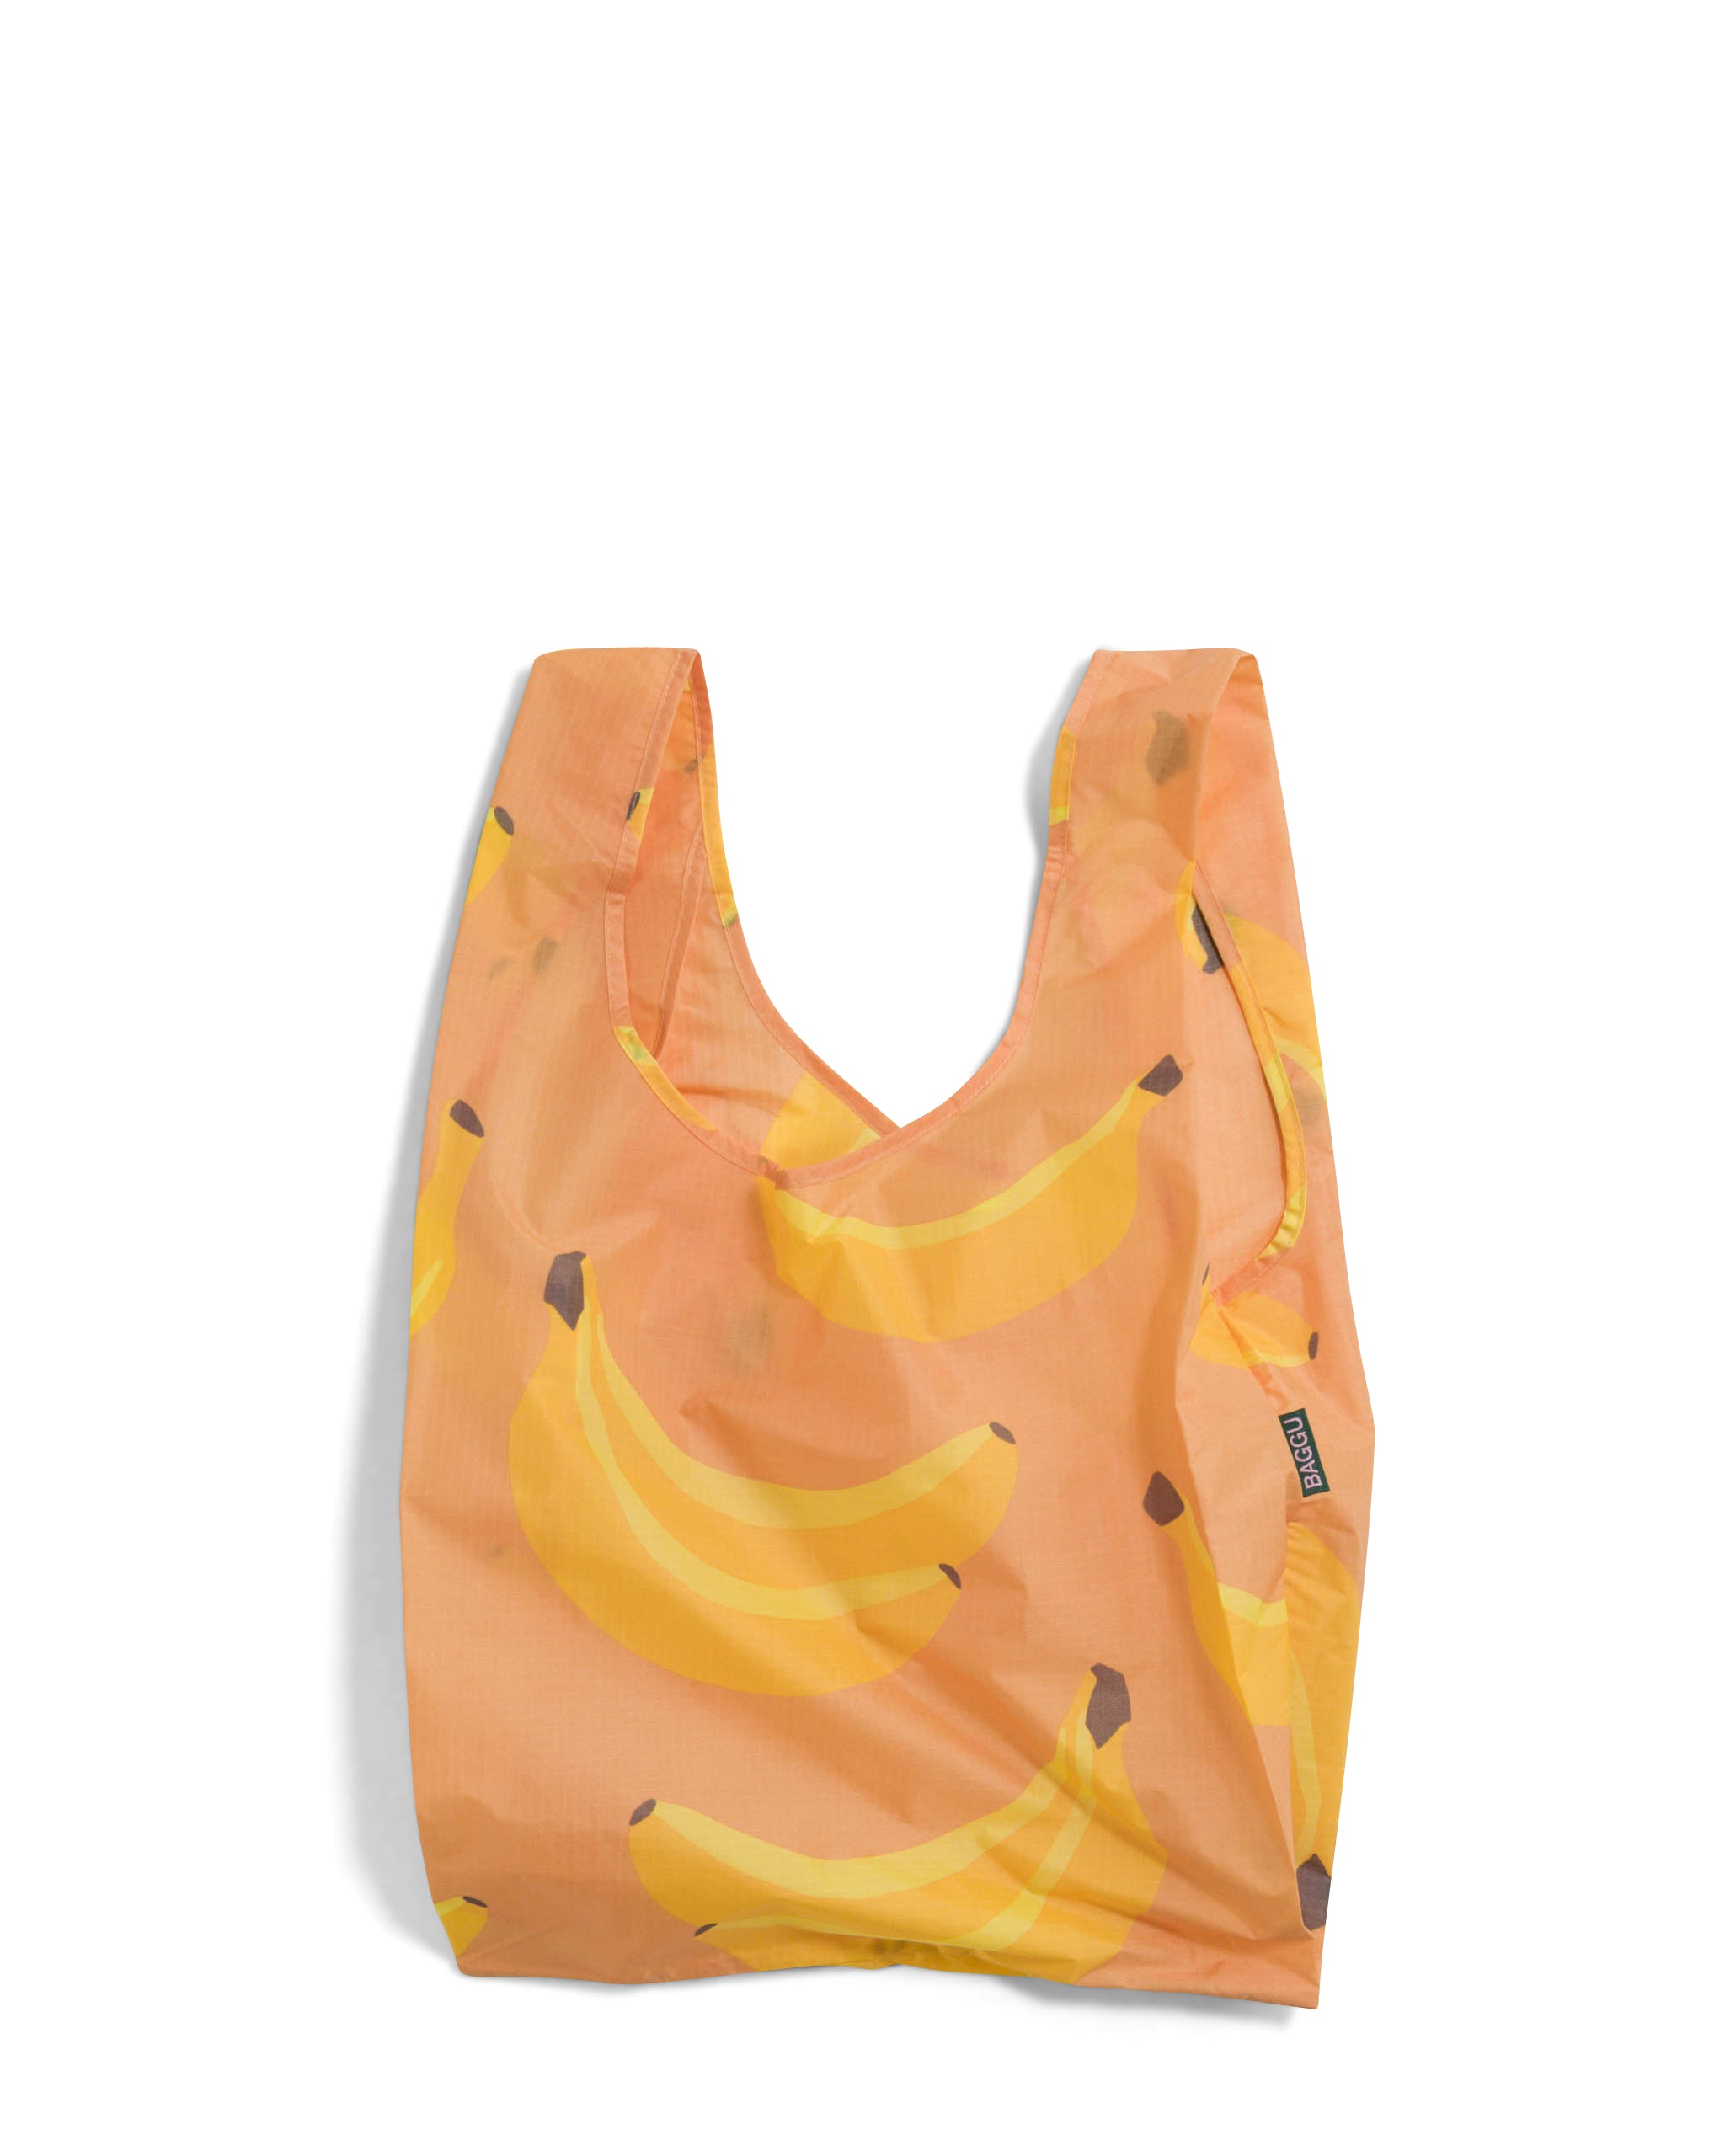 Reusable Bag - Banana